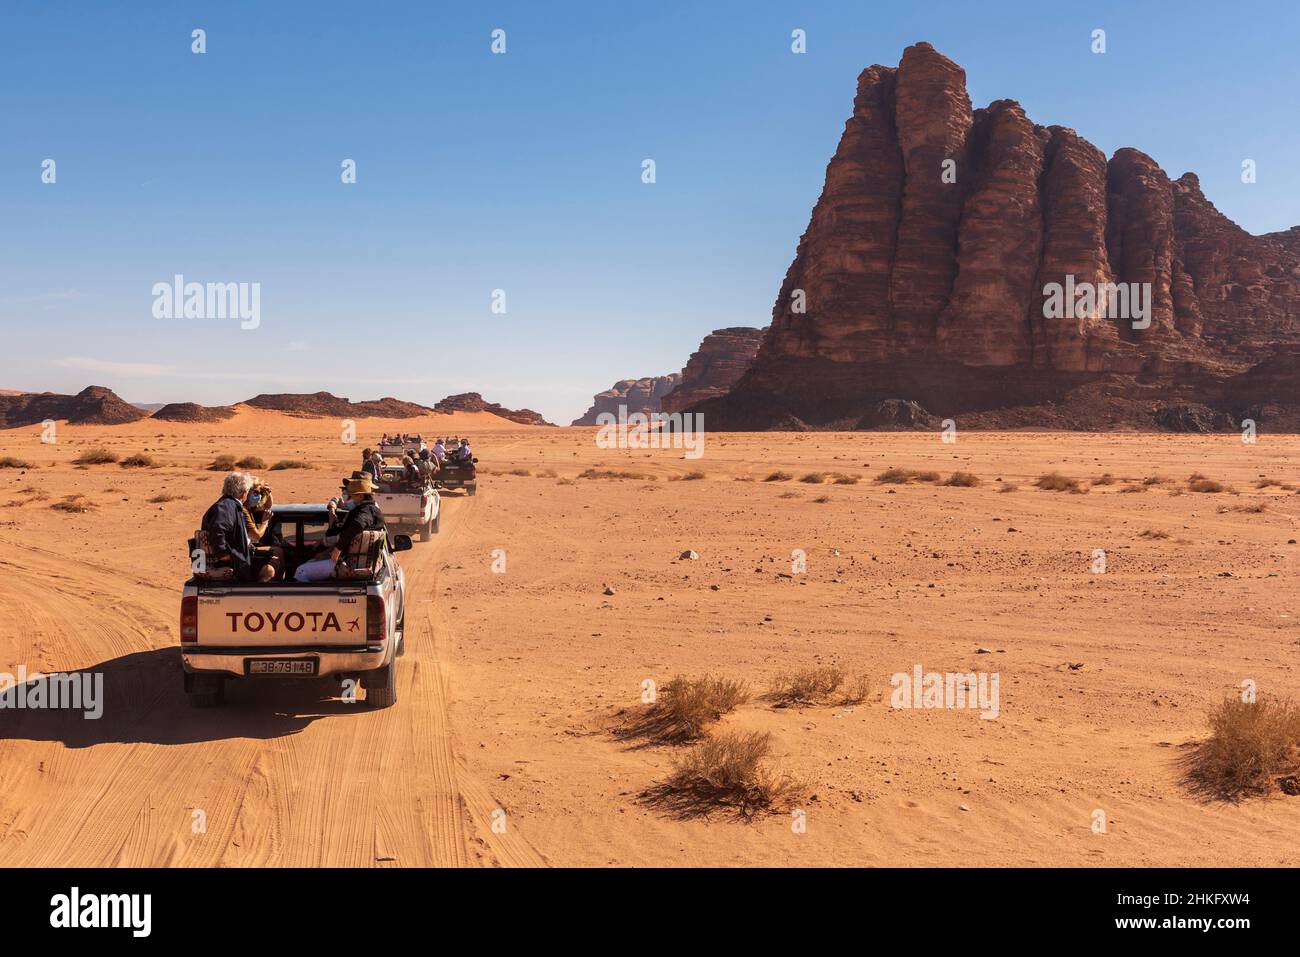 Jordanien, Aqaba Governorate, Wadi Rum, von der UNESCO zum Weltkulturerbe erklärt, Wüste, um-Ishrin-Gebirge, die Sieben Säulen der Weisheit und Touristen in Allradfahrzeugen Stockfoto